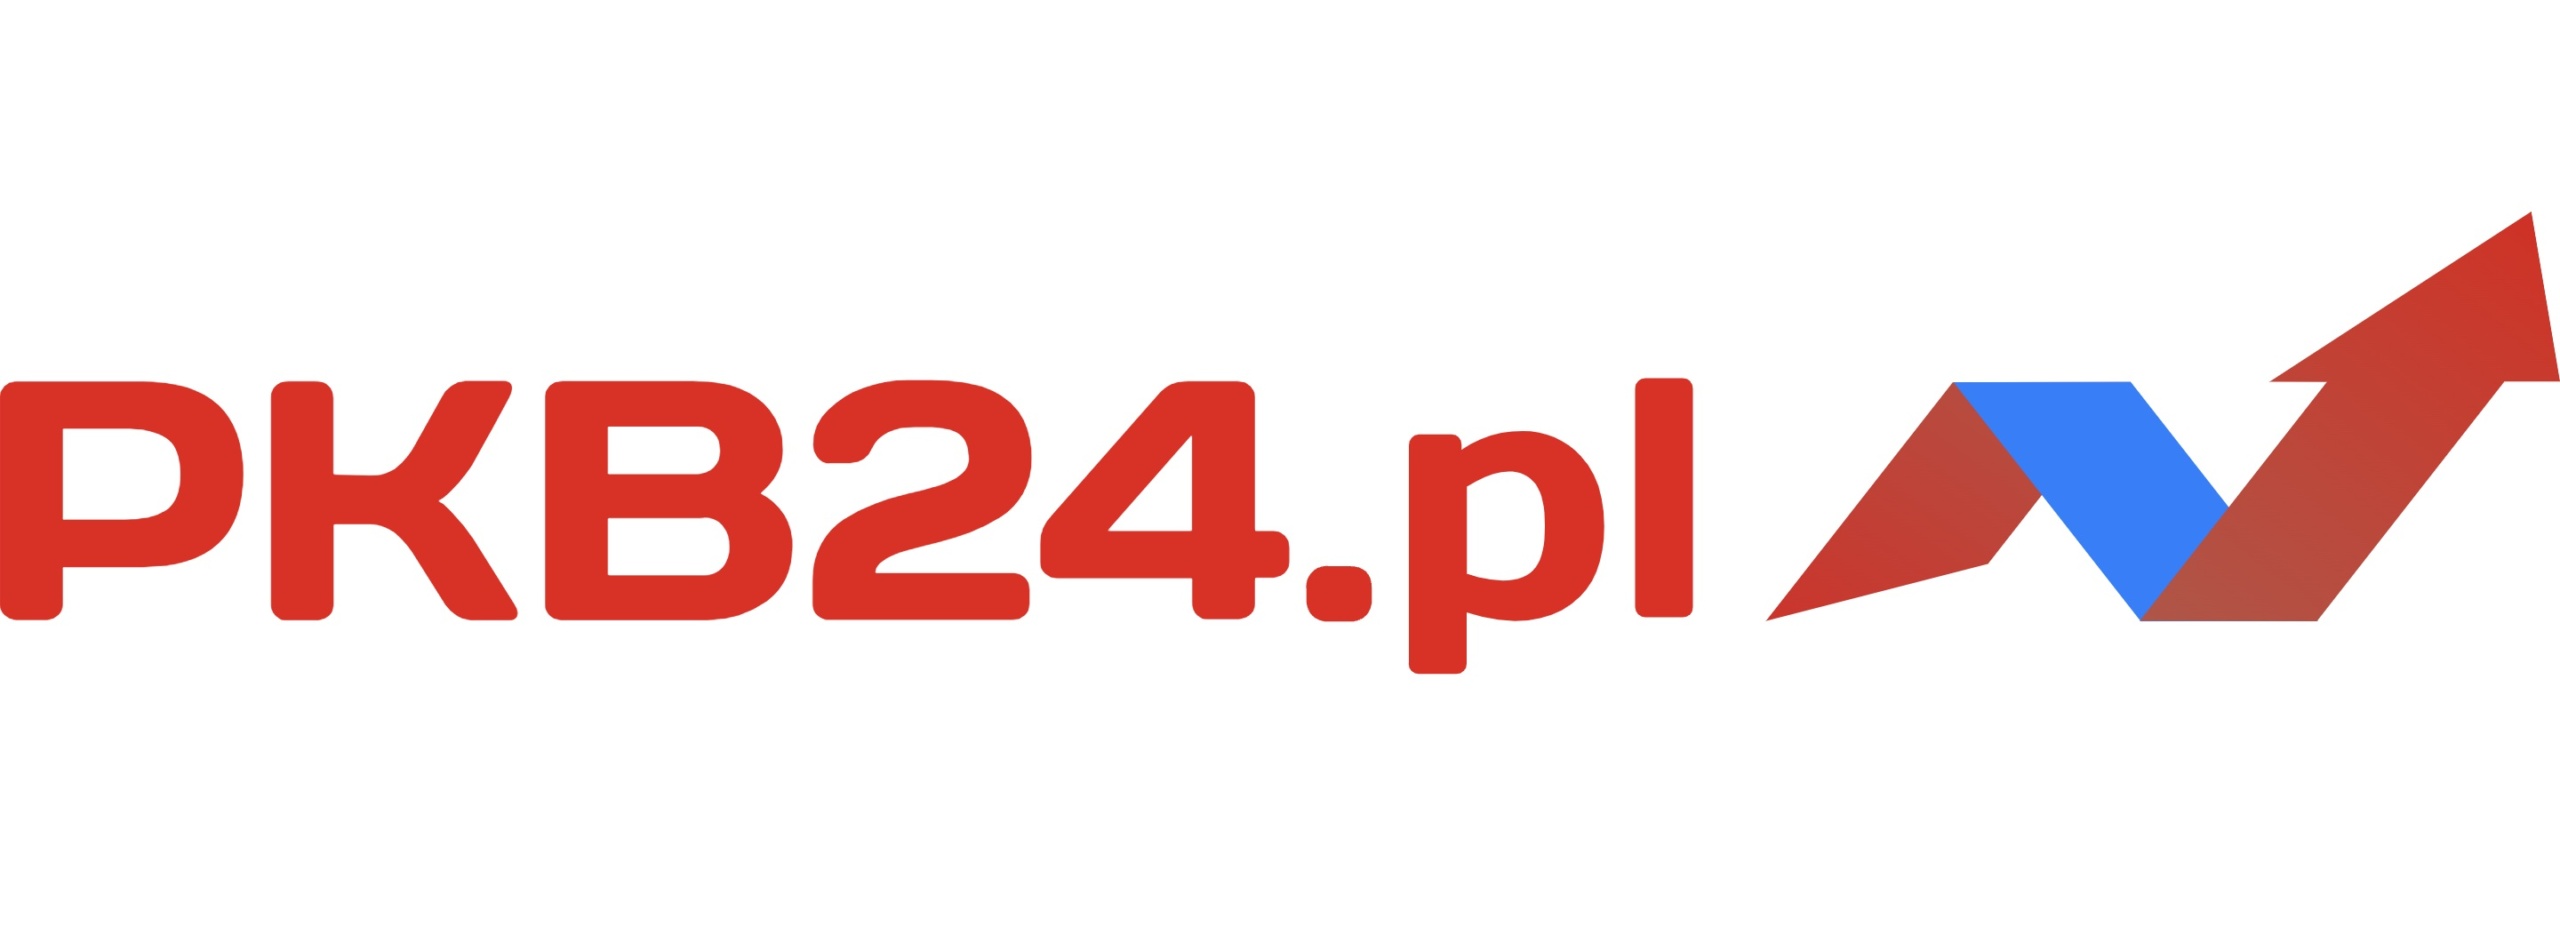 PKB24.pl | Wartość realizowanych i planowanych inwestycji energetycznych w Polsce przekroczyła 500 mld zł